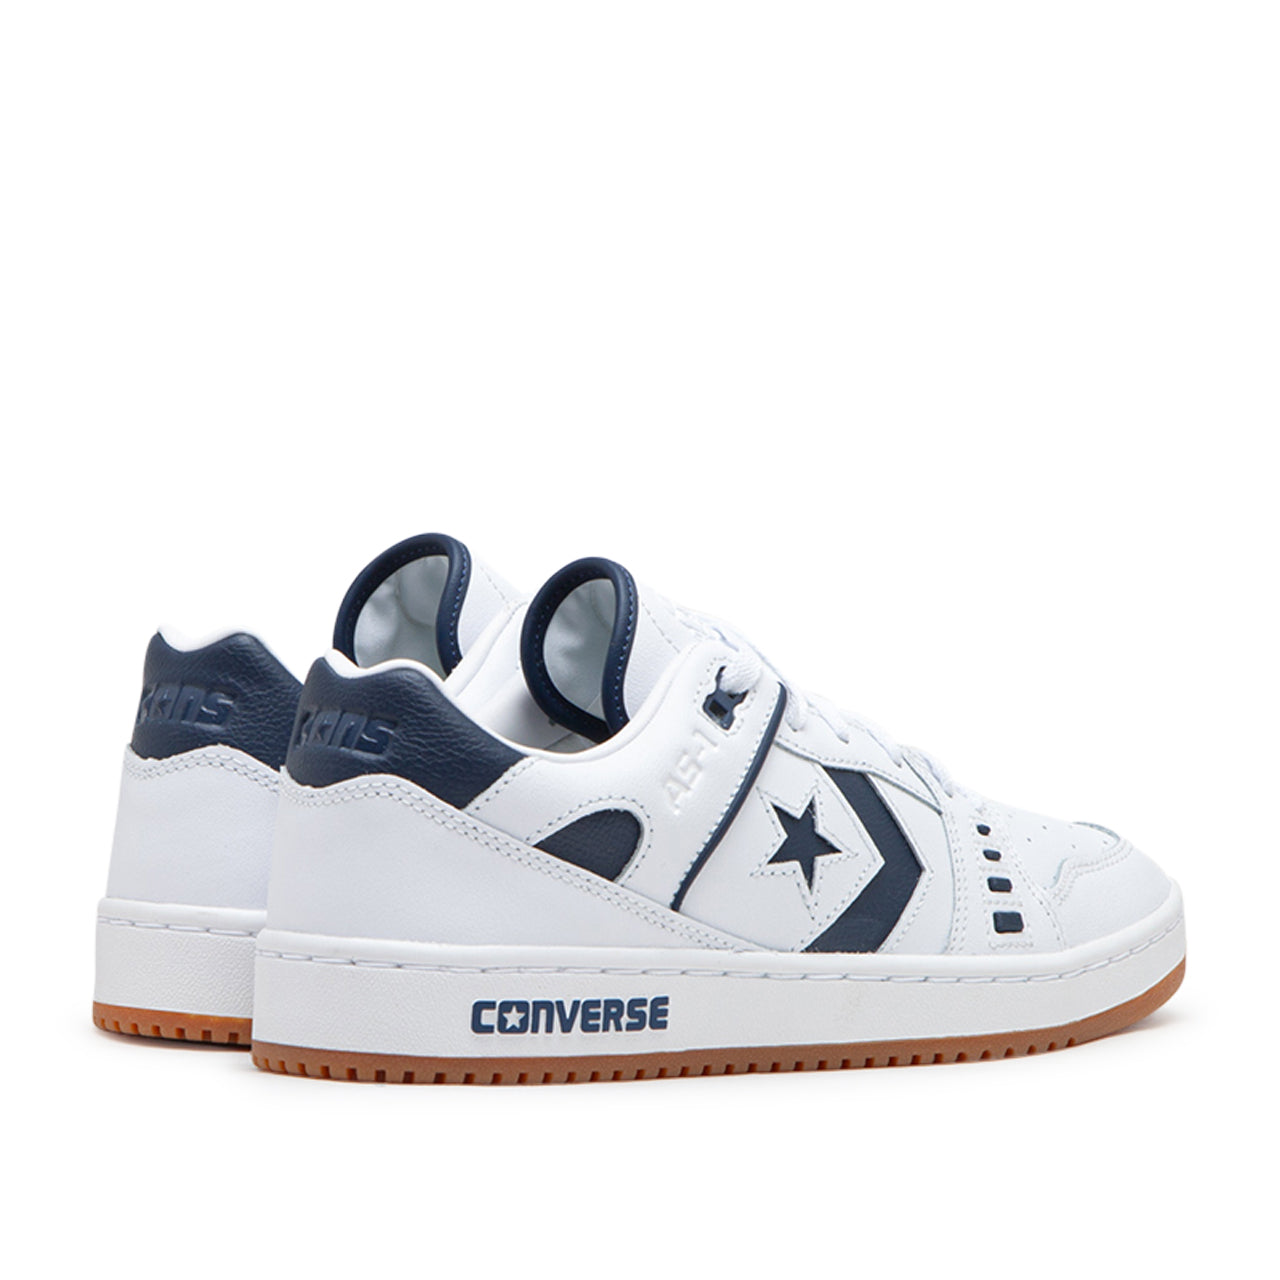 Converse Cons AS-1 Pro Skate (Weiß / Custom)  - Cheap Juzsports Jordan Outlet